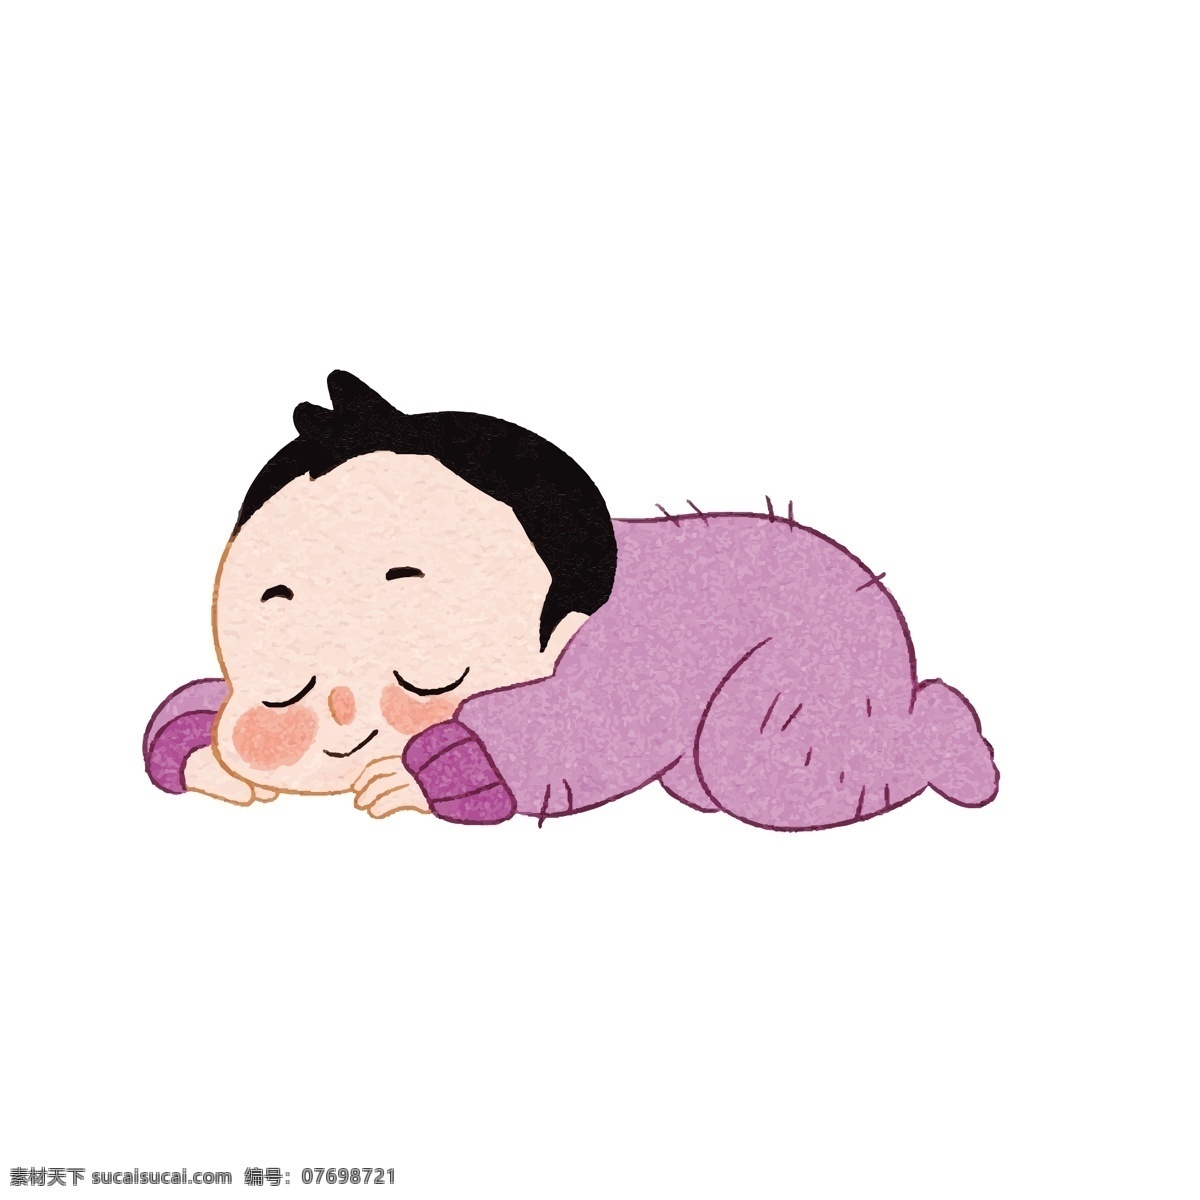 趴 睡觉 小孩 矢量 可爱小孩 紫色 紫色衣服 趴着 睡觉的小孩 睡觉的娃娃 娃娃 可爱娃娃